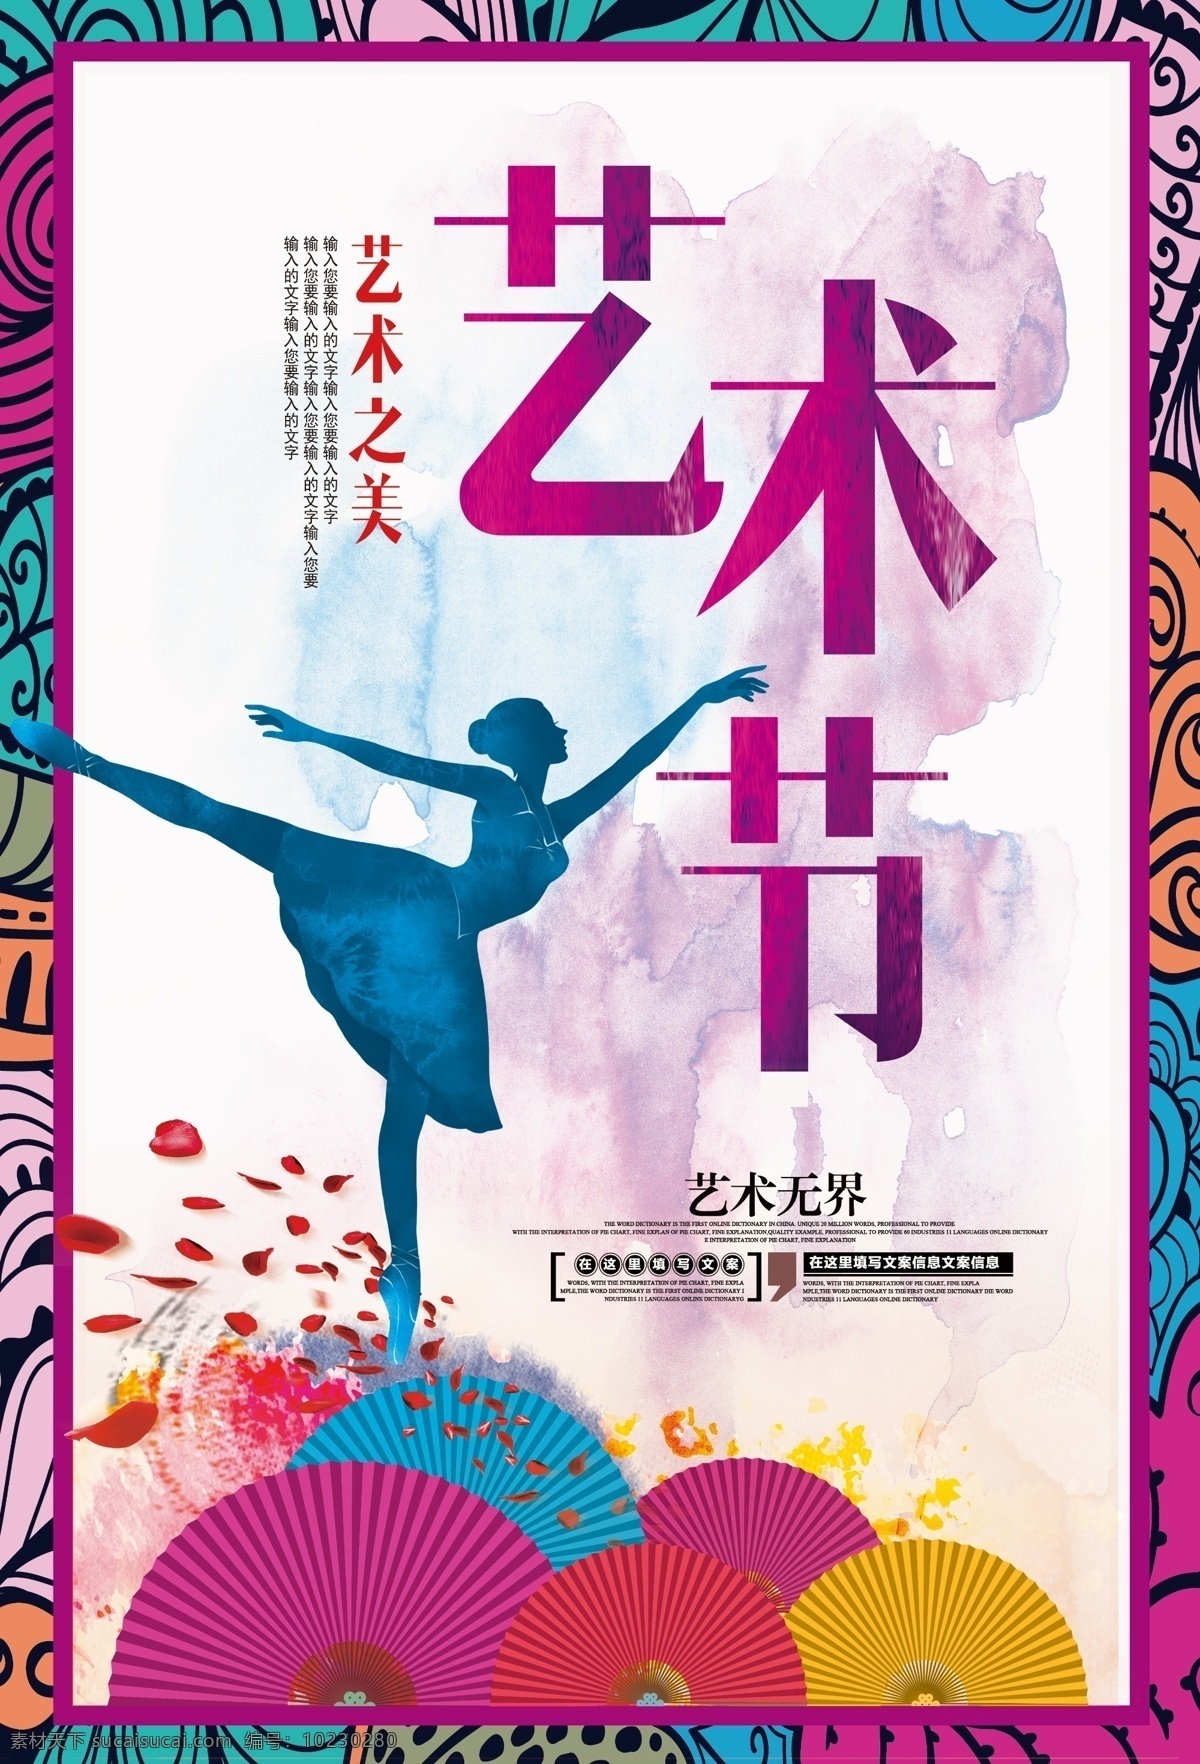 校园艺术节 艺术节海报 舞蹈 舞蹈海报 舞蹈展板 中国风艺术节 唯美中国风 海报